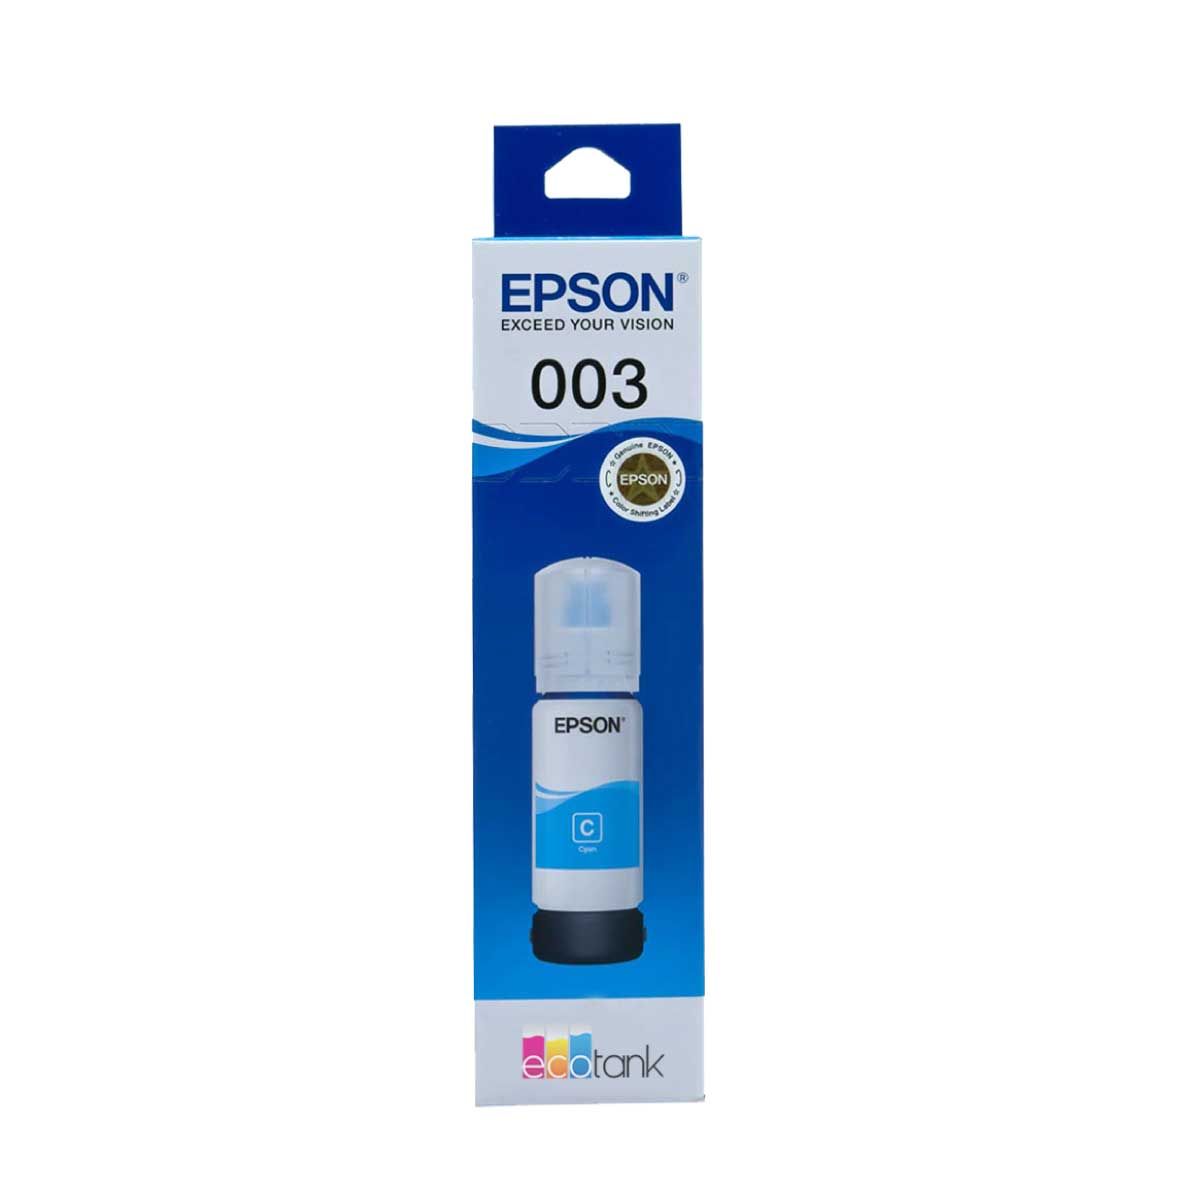 น้ำหมึกเติม EPSON INK TANK สีฟ้า เบอร์ T00V200